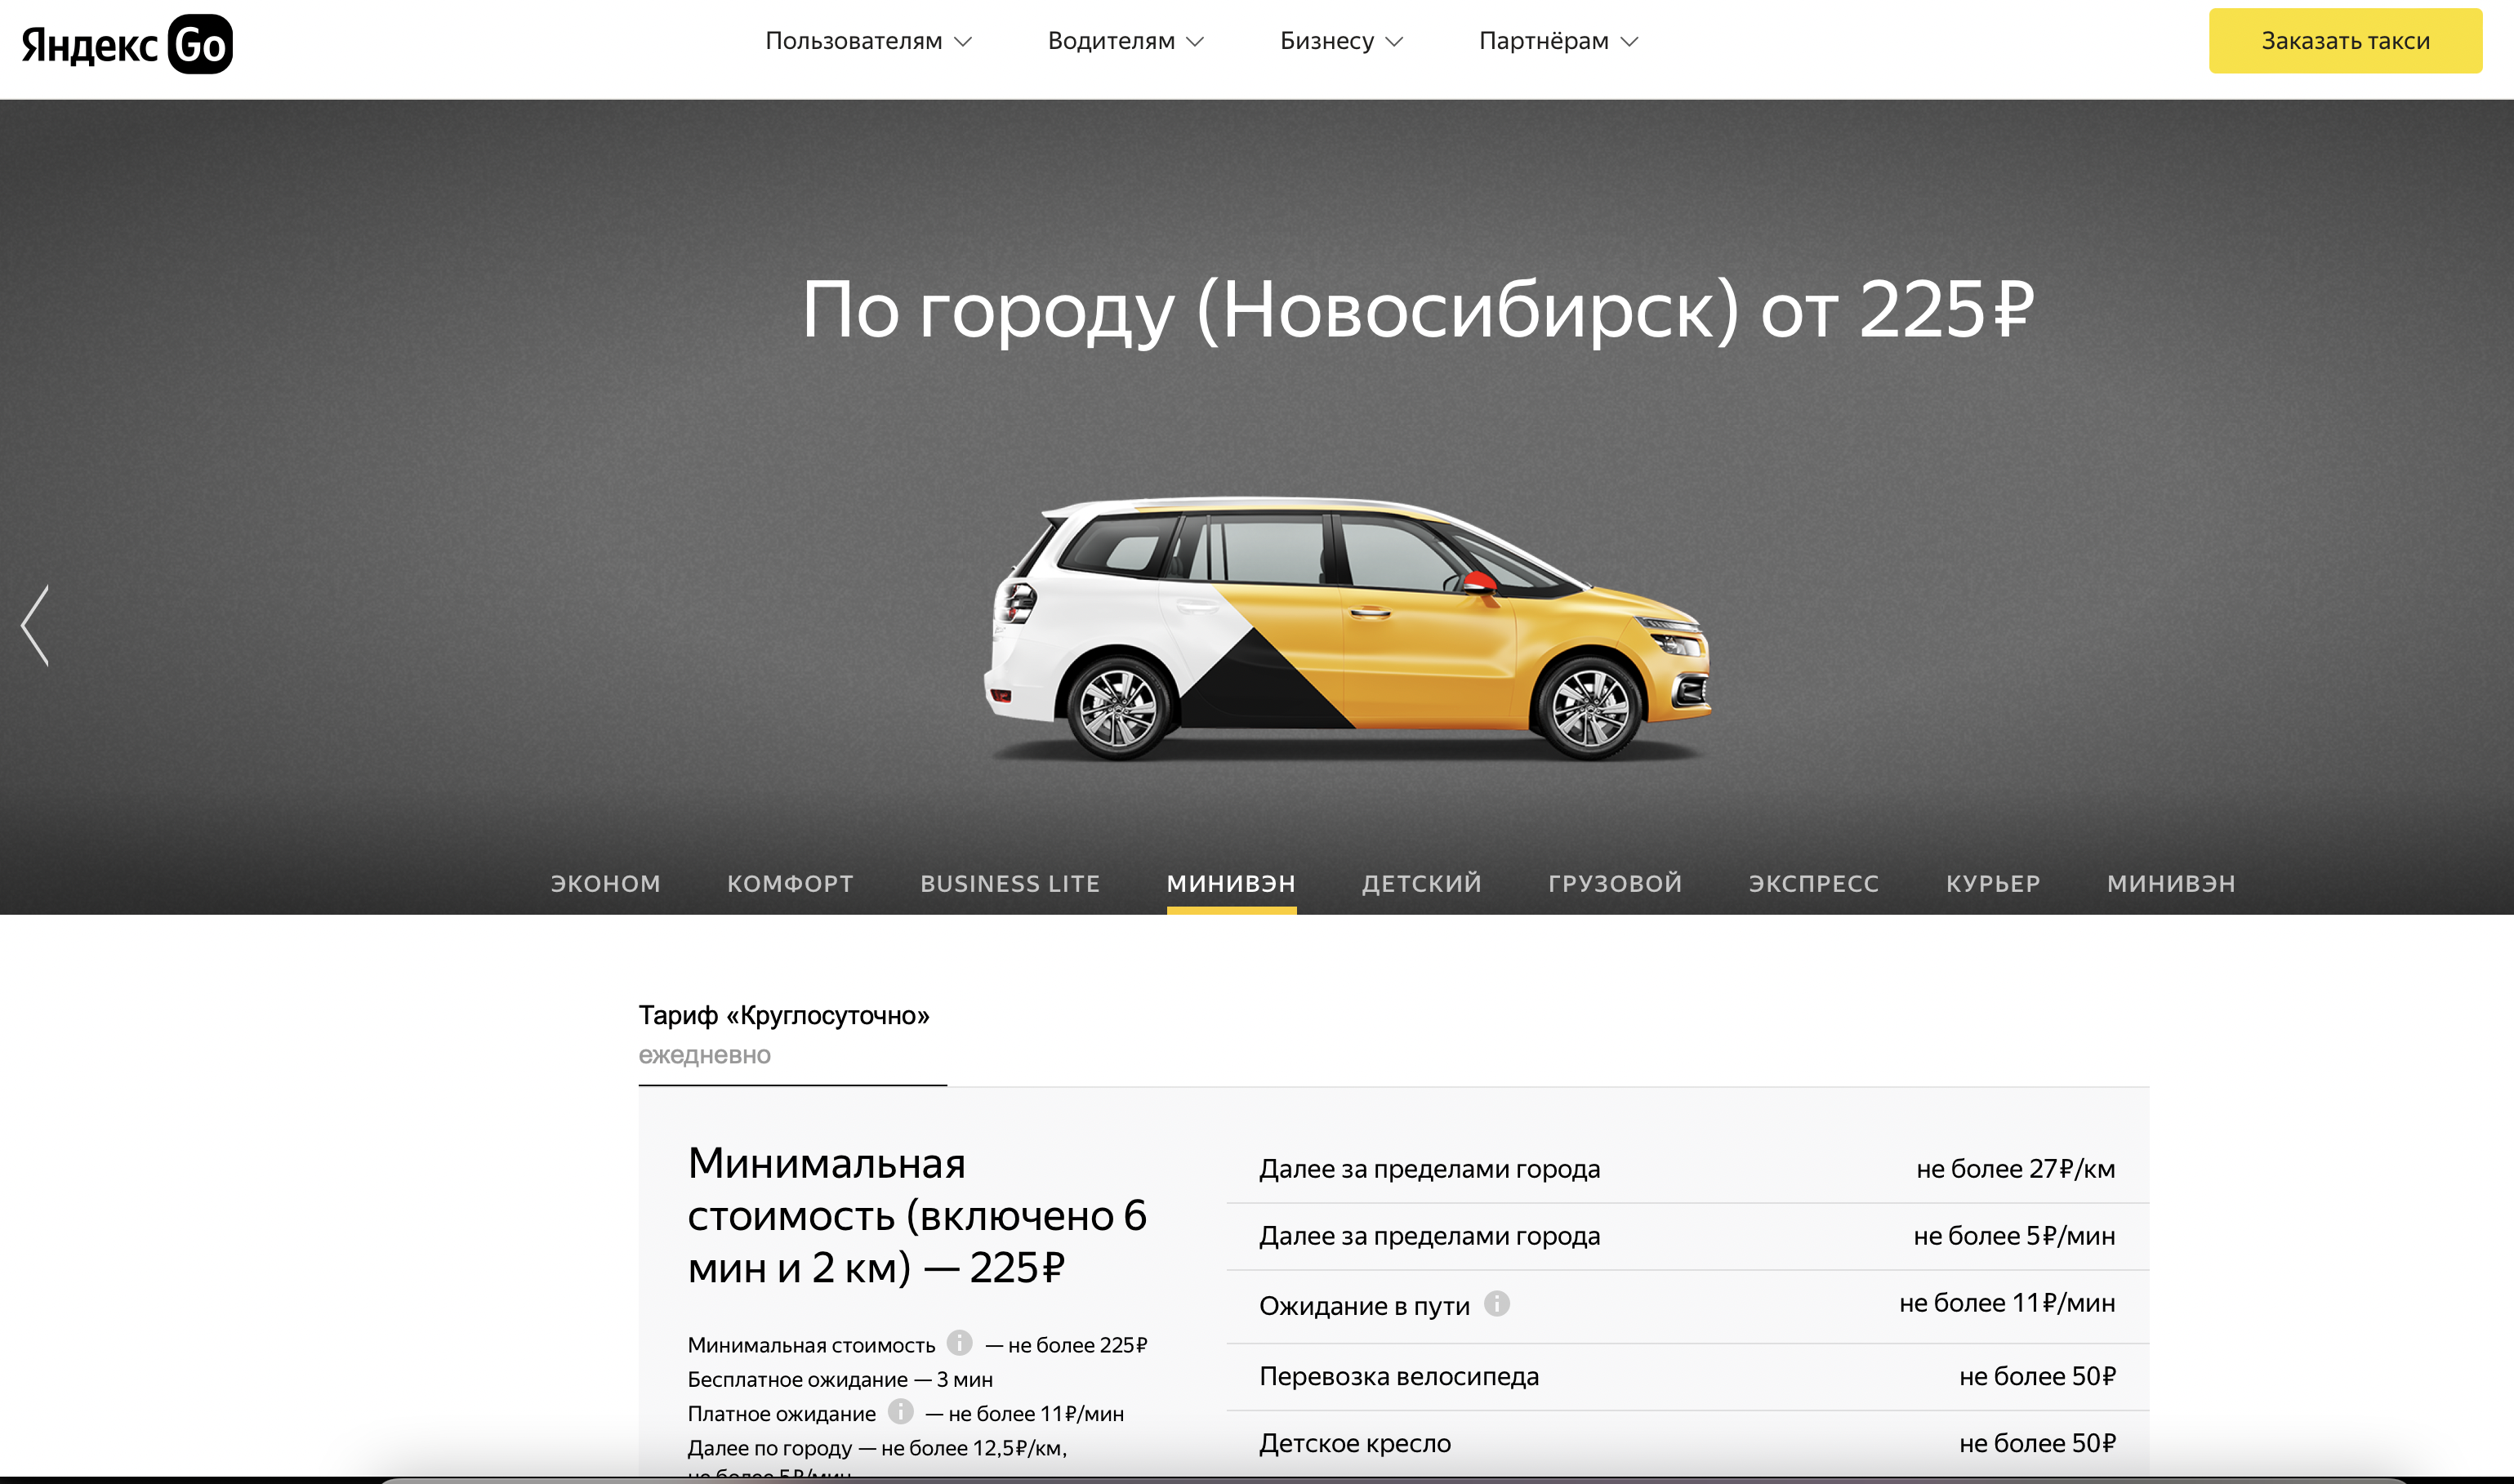 Такси Новосибирск заказать. Водитель такси в новосибирске